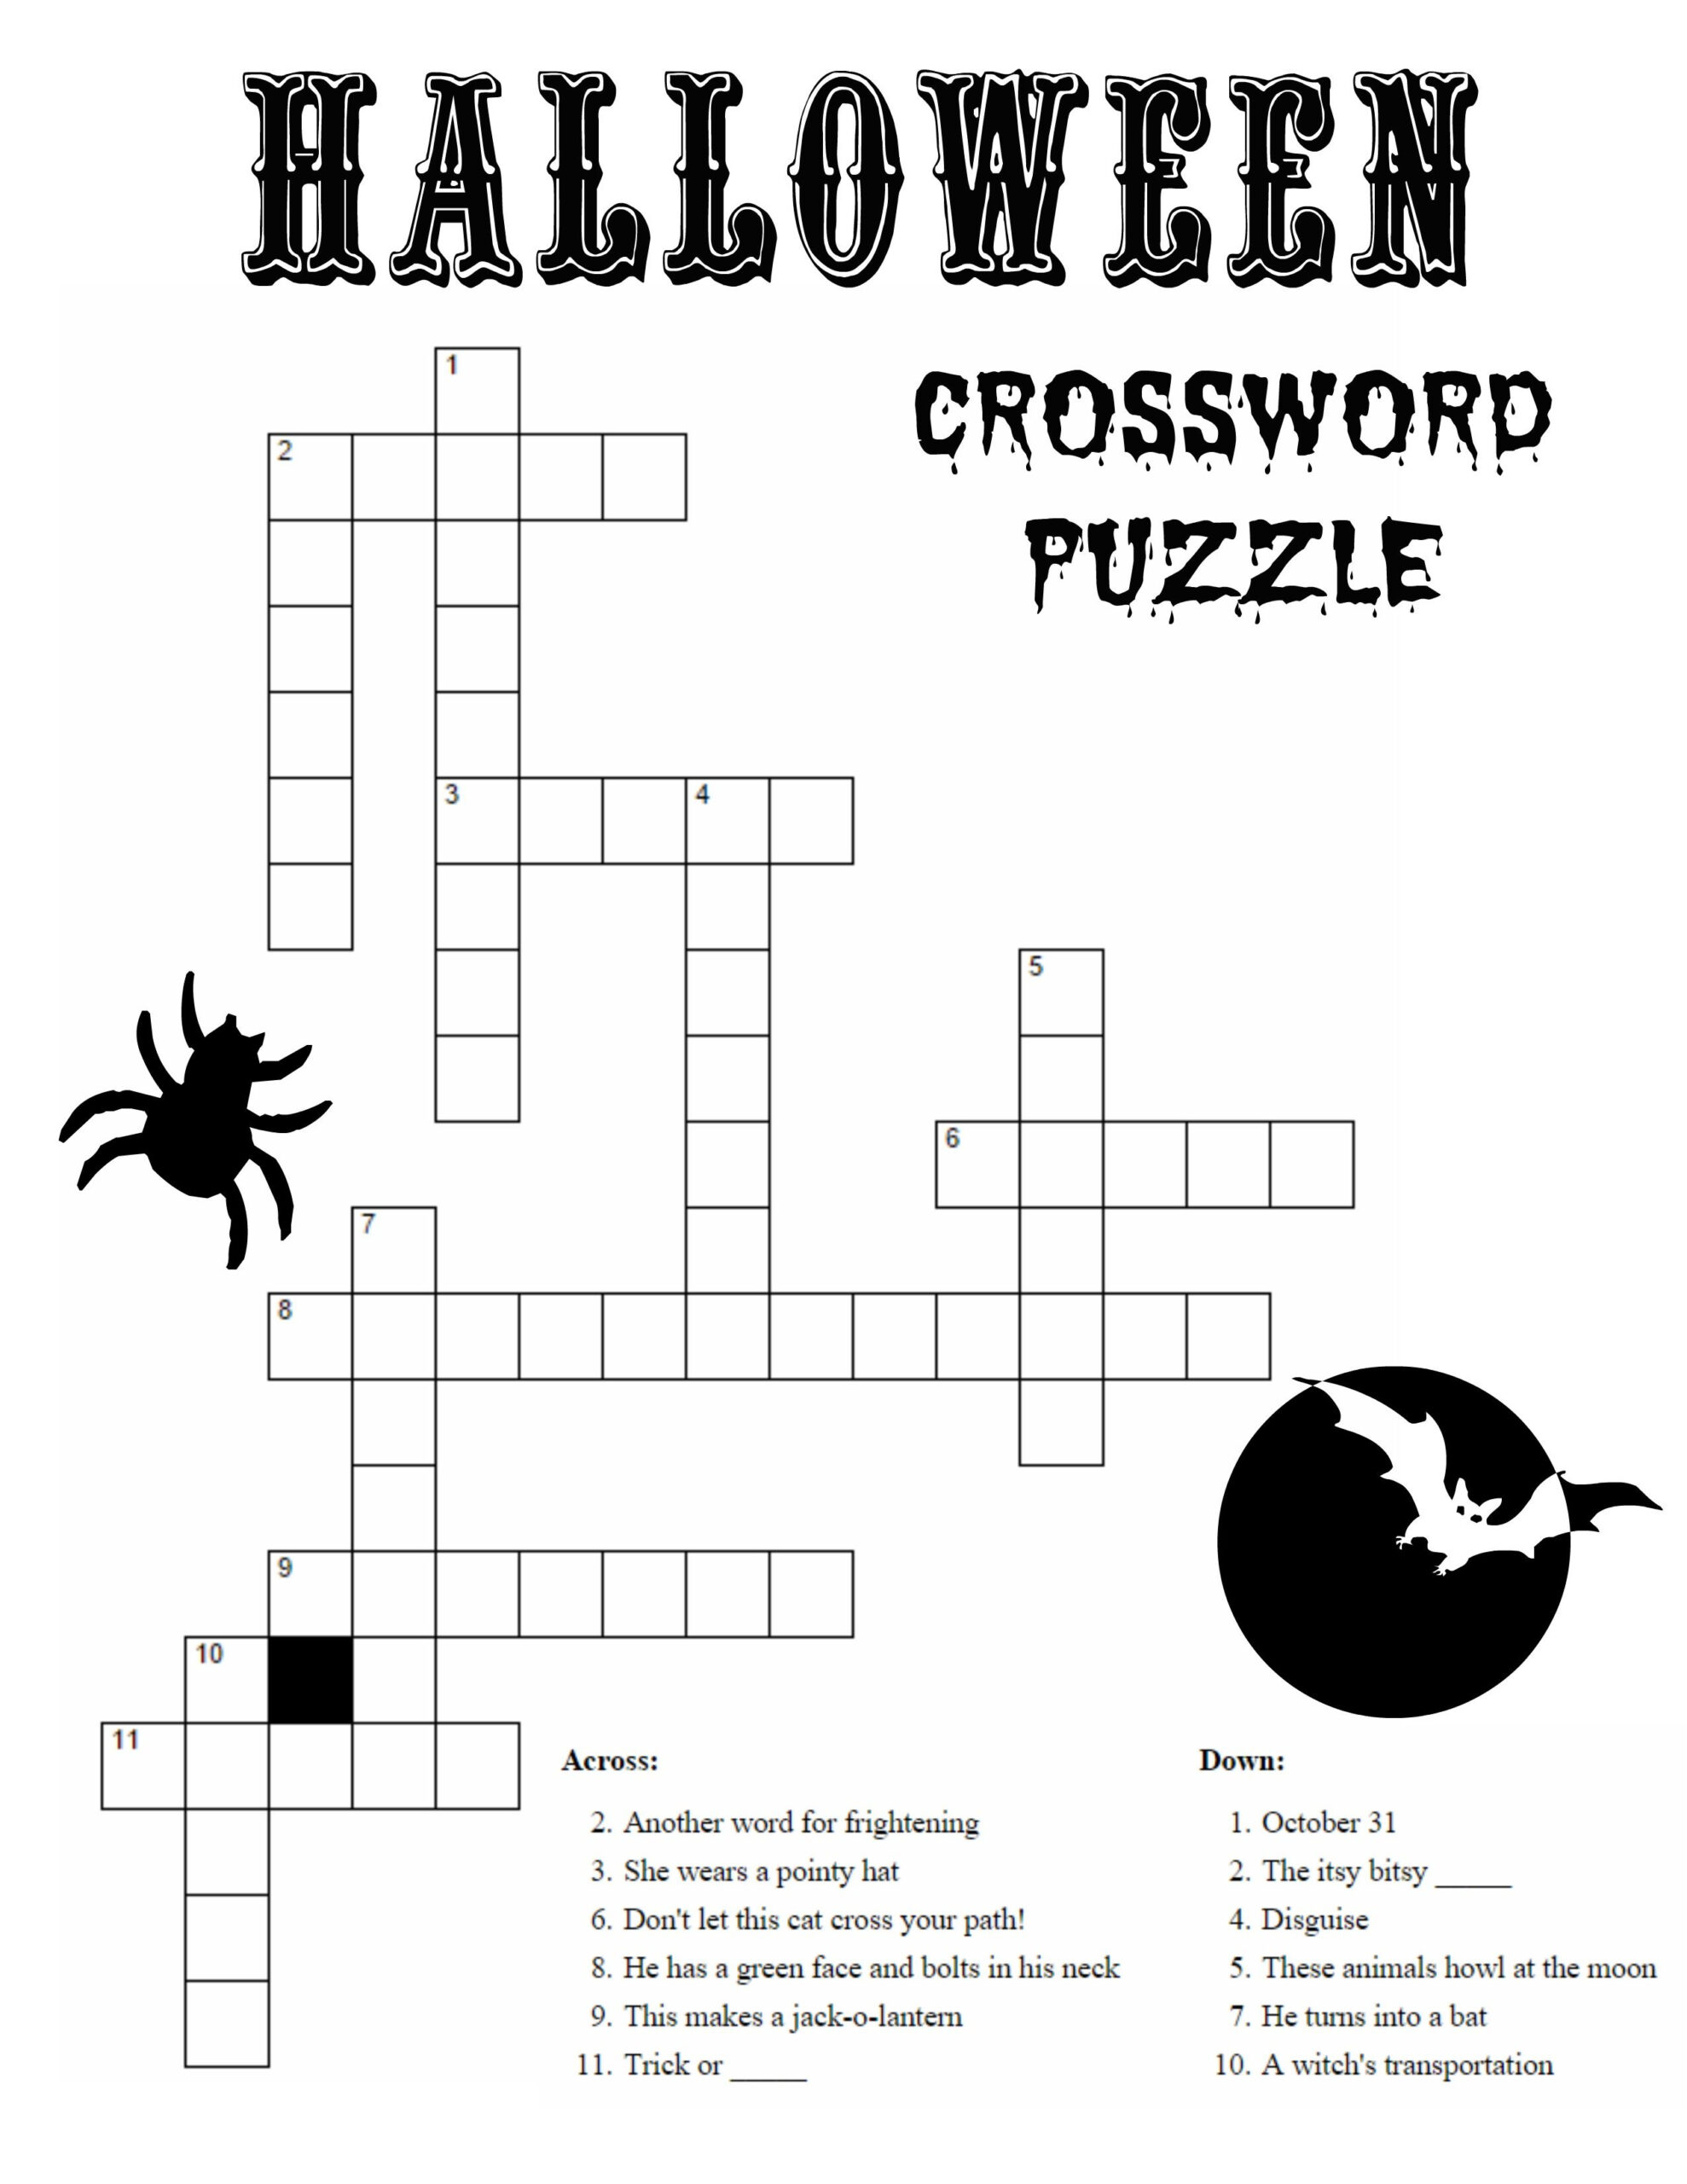 Crossword Kid Halloween Activities Halloween Crossword Puzzle Sc 1 St 